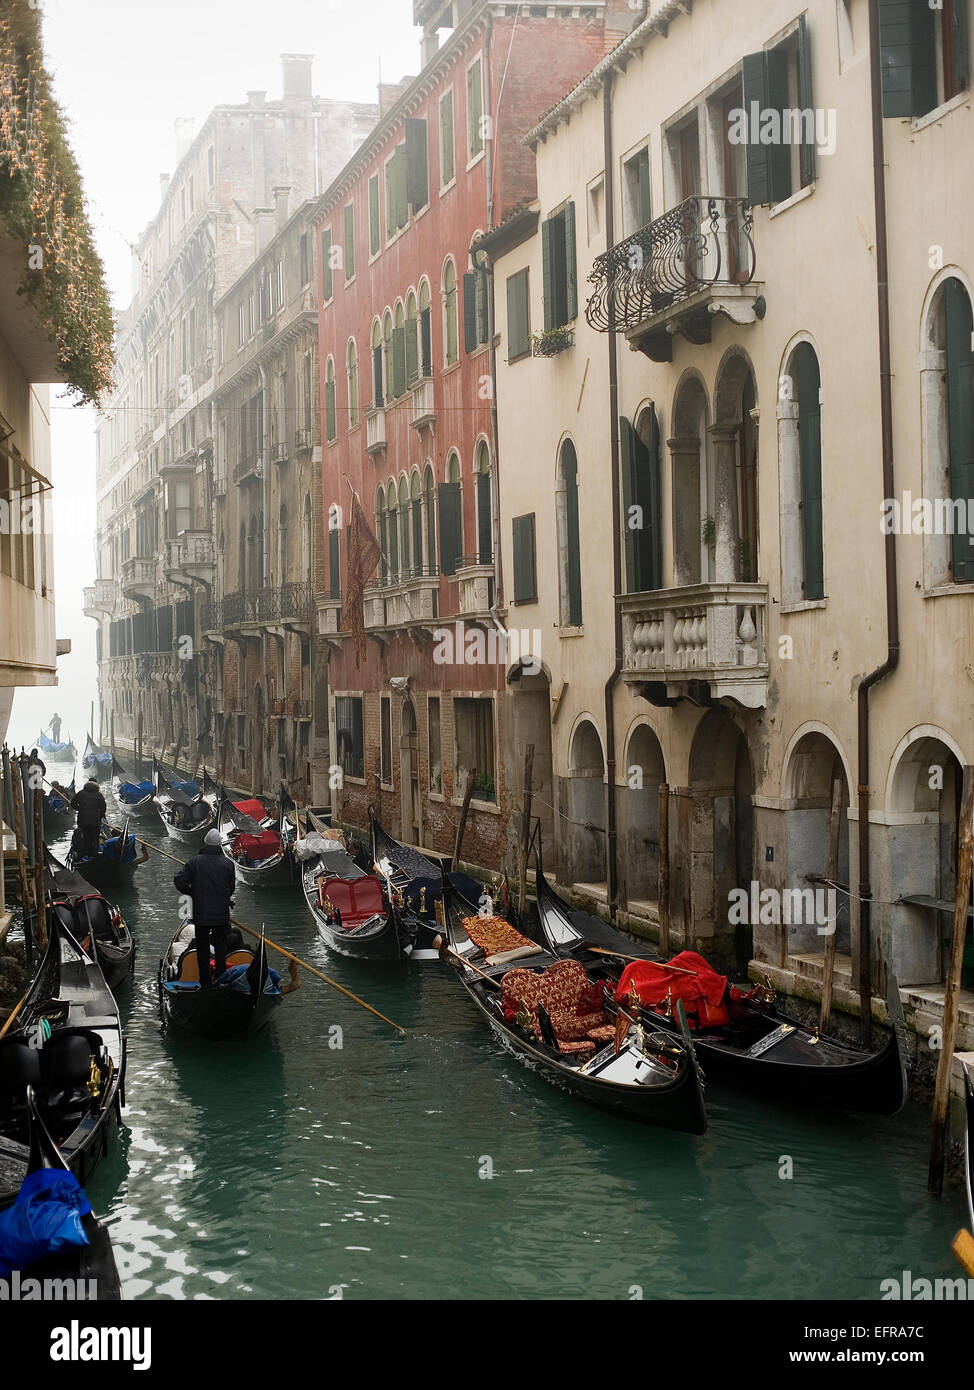 Persone barche nebbia nebbia canal gondola gondoliere Venezia acqua case storiche balconi turismo sito UNESCO Foto Stock